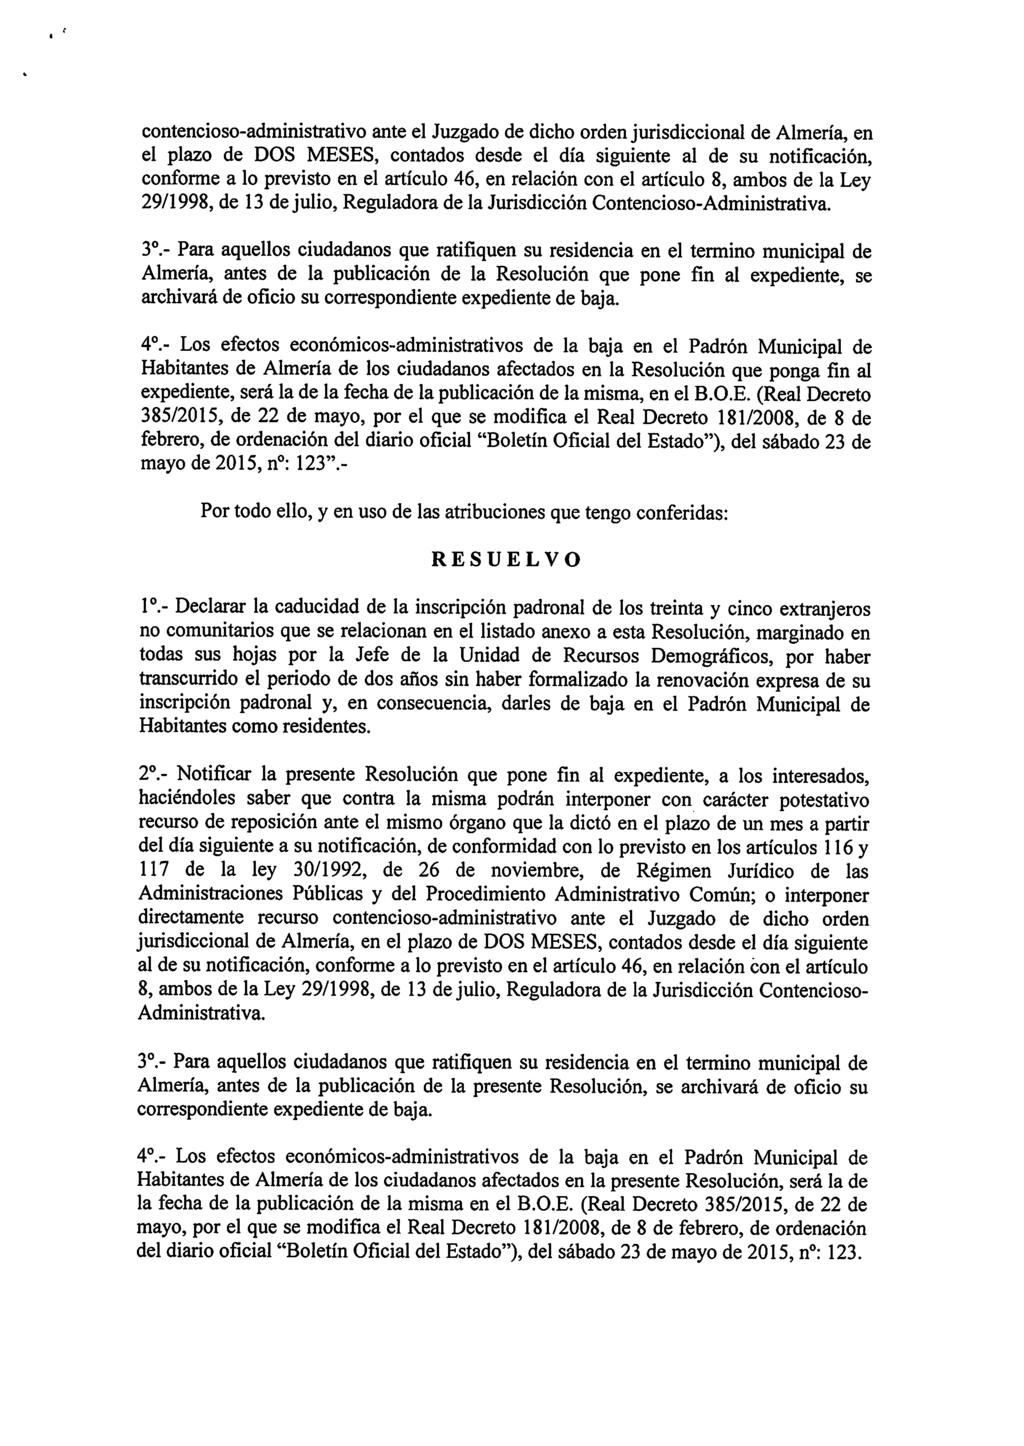 contencioso-administrativo ante el Juzgado de dicho orden jurisdiccional de Almería, en el plazo de DOS MESES, contados desde el día siguiente al de su notificación, conforme a lo previsto en el